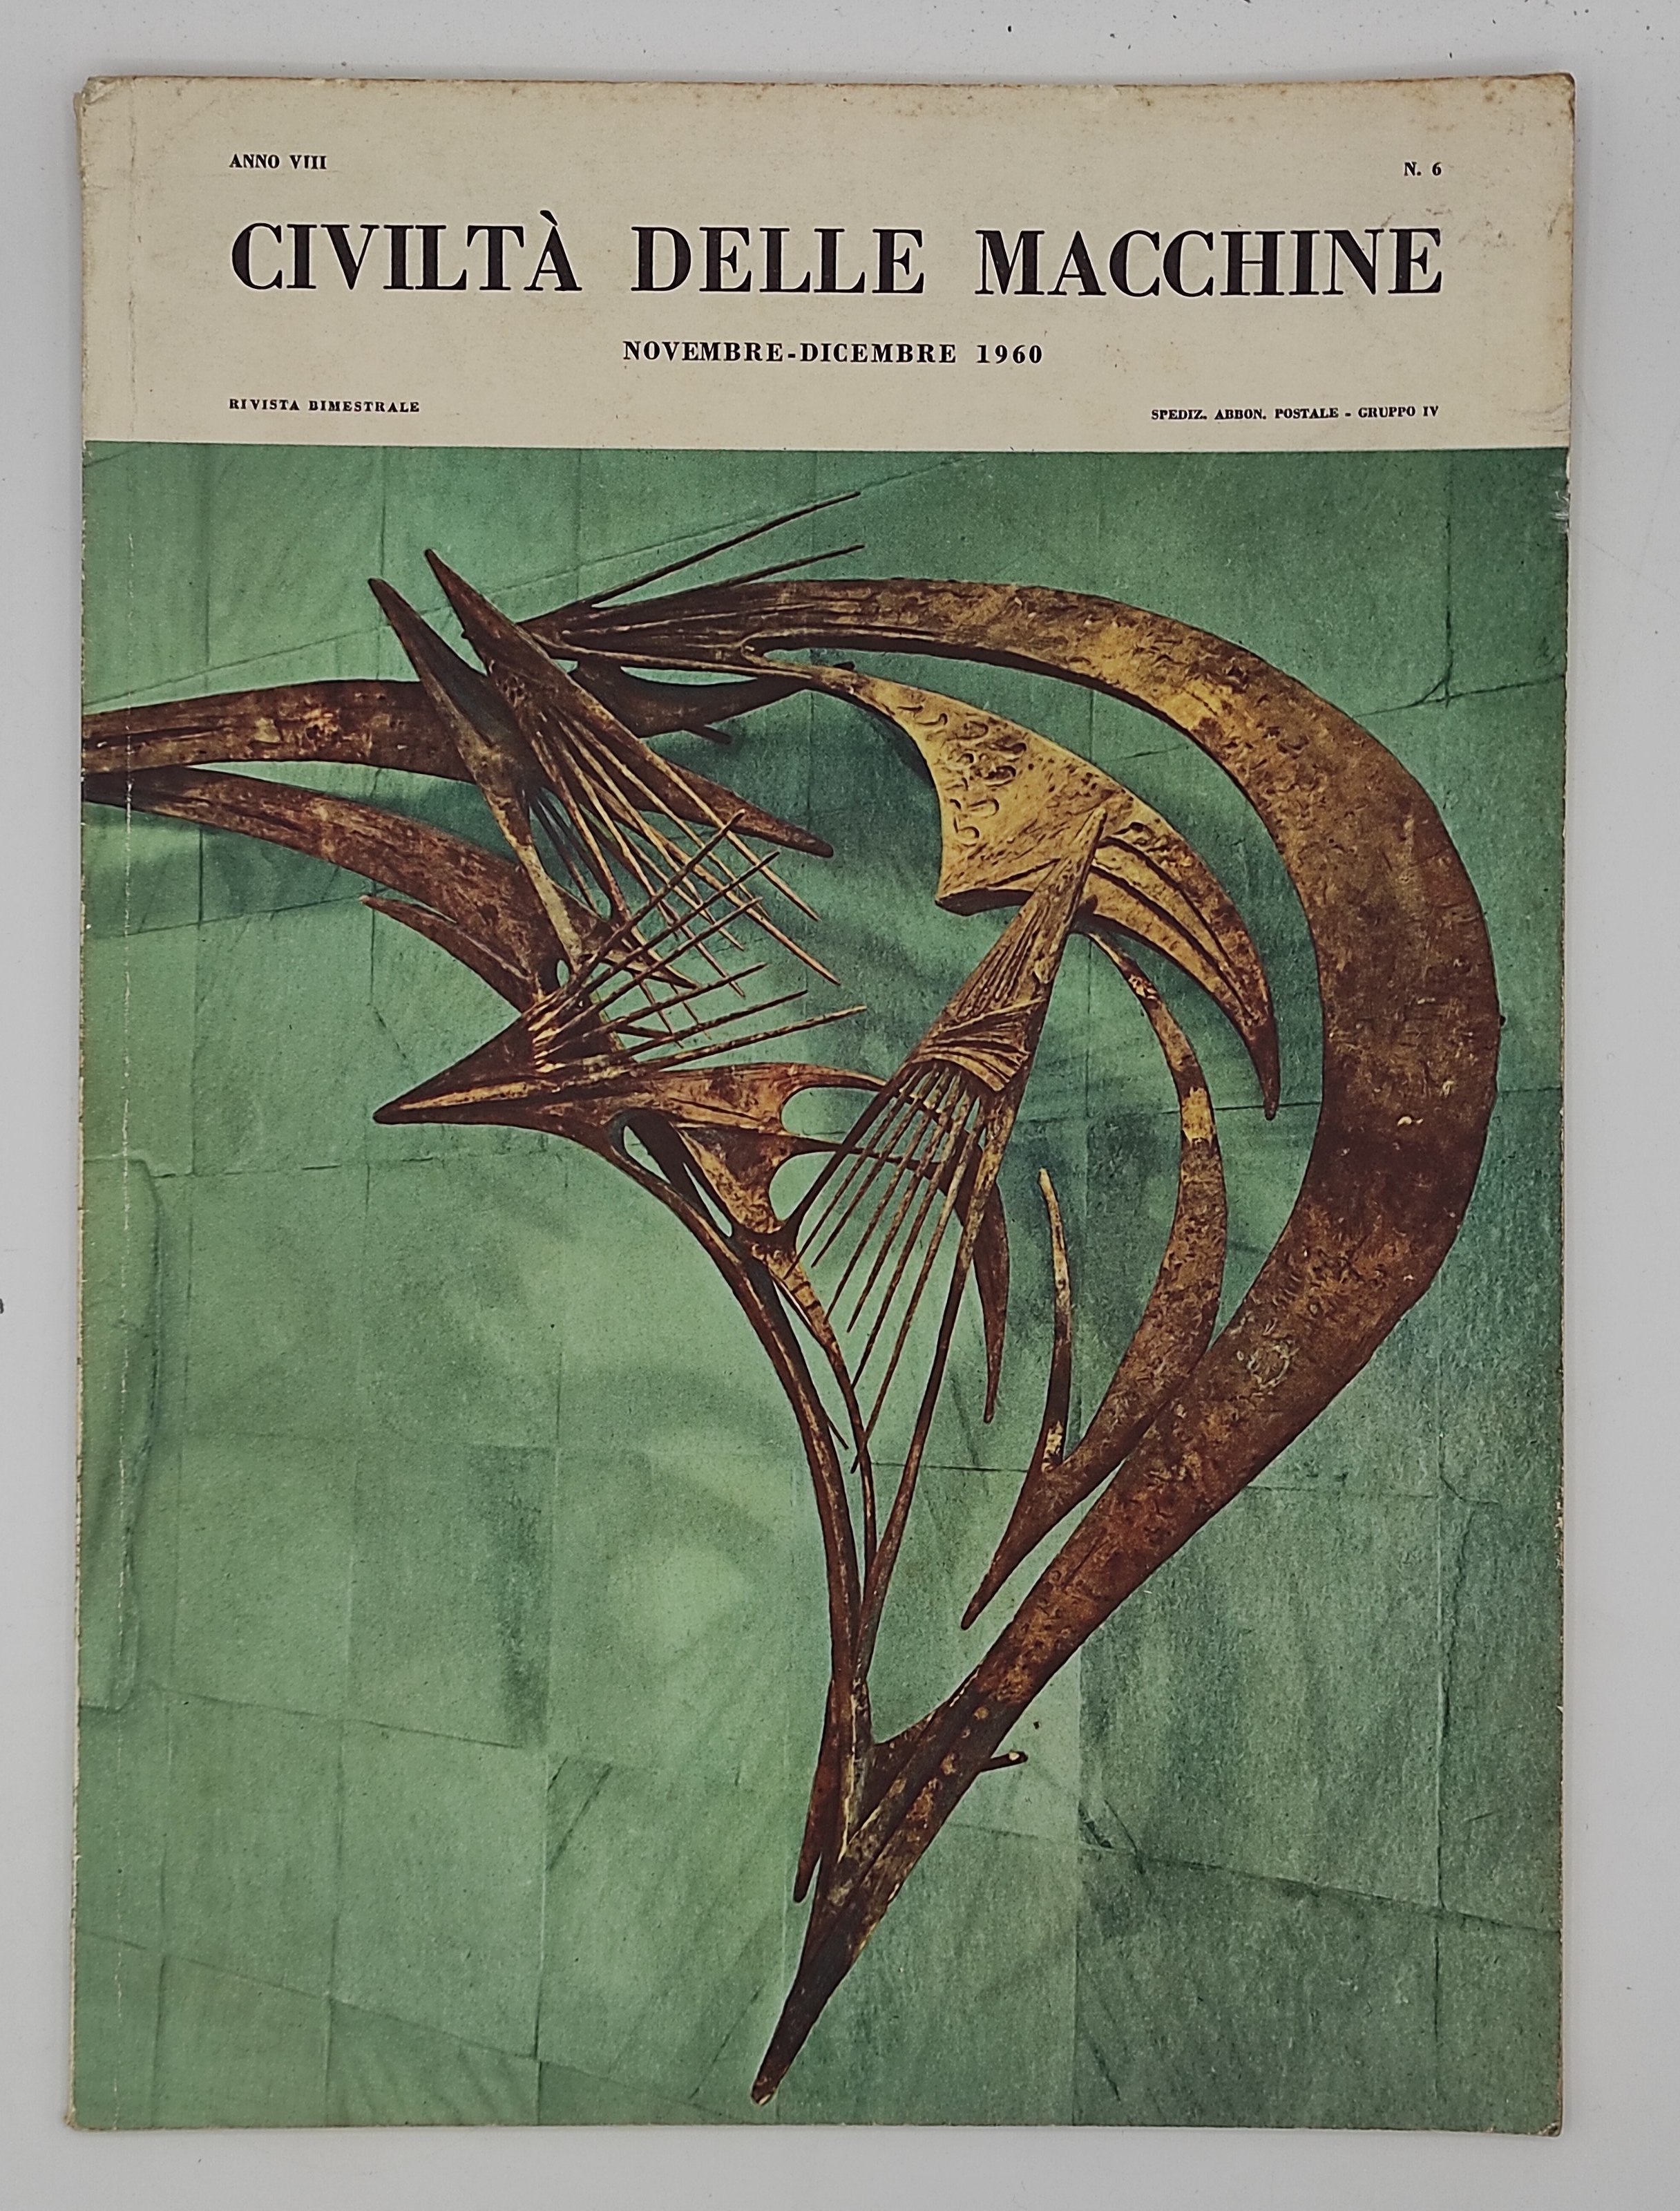 Civiltà della macchine (N.6, Nov - Dic 1960, Anno VIII)